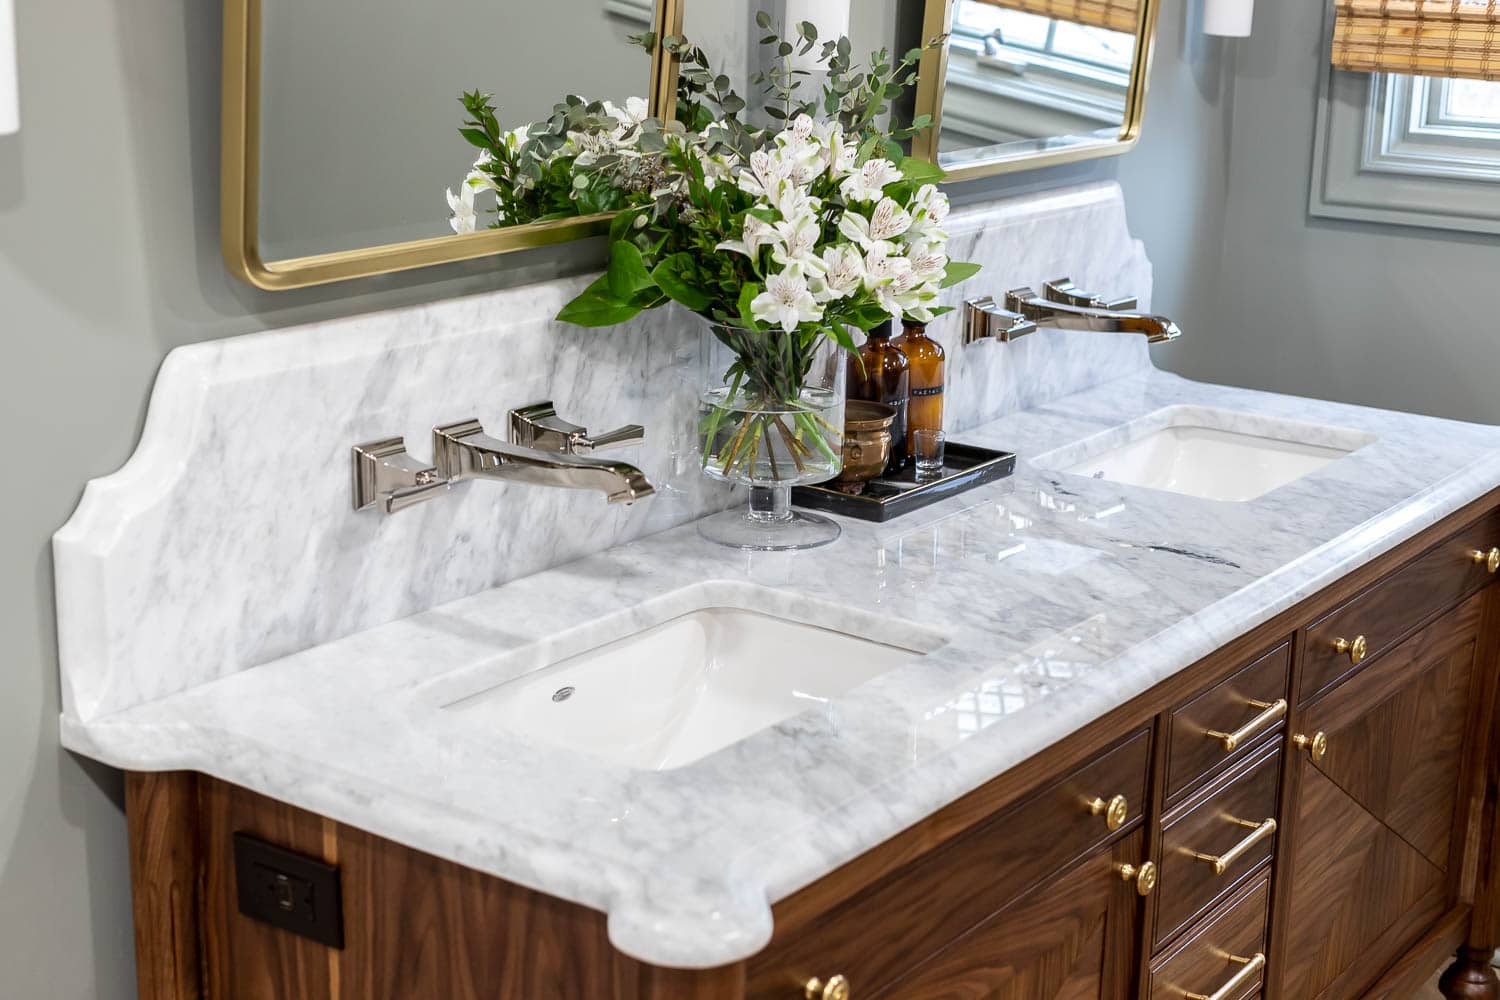 Bathroom Remodel Update: Vanity Countertop – The House of Wood